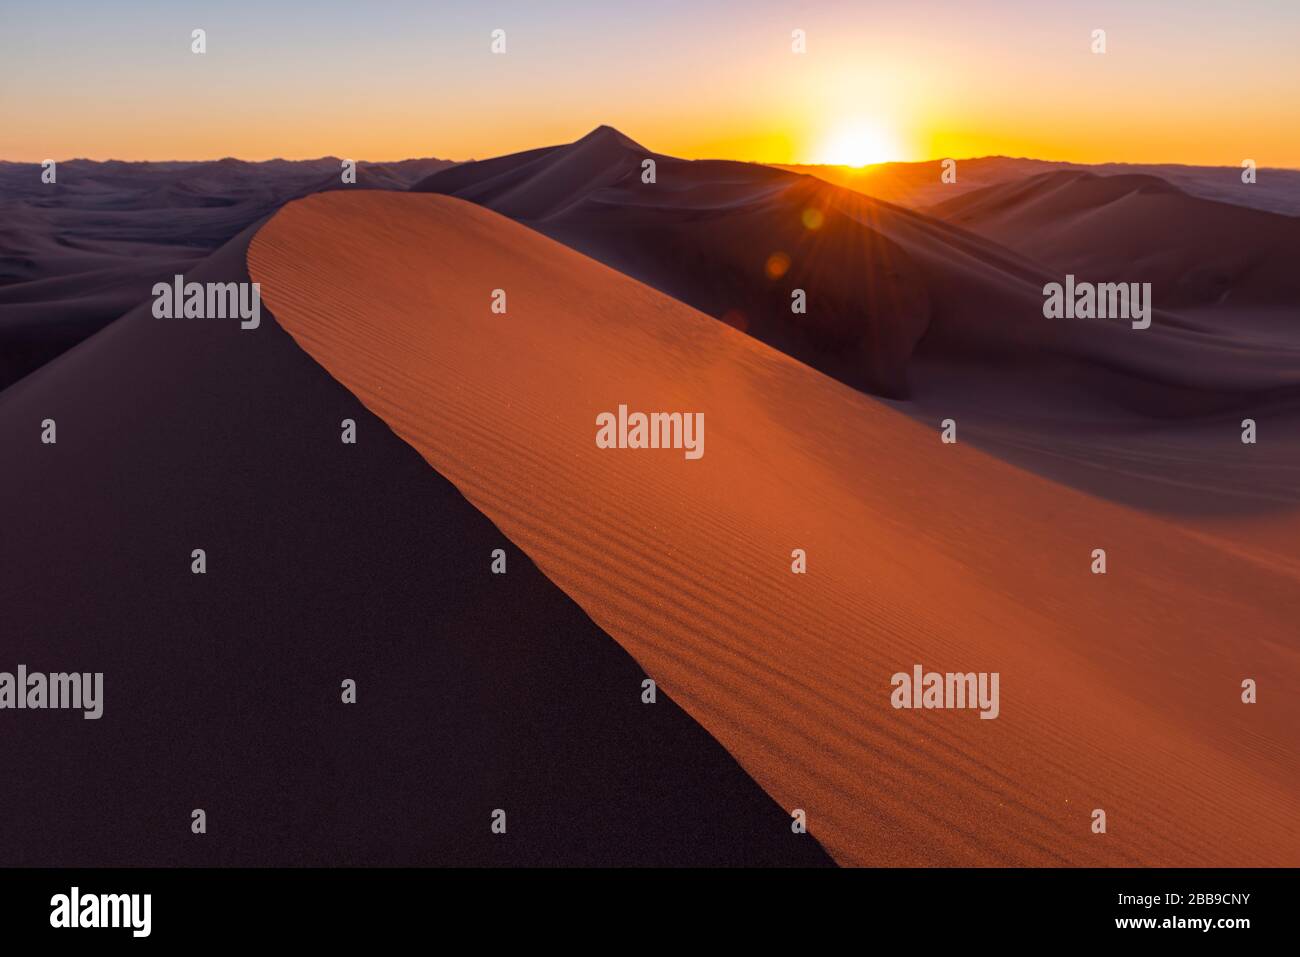 Schatten und Licht bei Sonnenuntergang in den riesigen Sanddünen der Wüste zwischen Ica und Huacachina, Peru. Scharf im Vordergrund, unscharf im Hintergrund, Linsenfland. Stockfoto